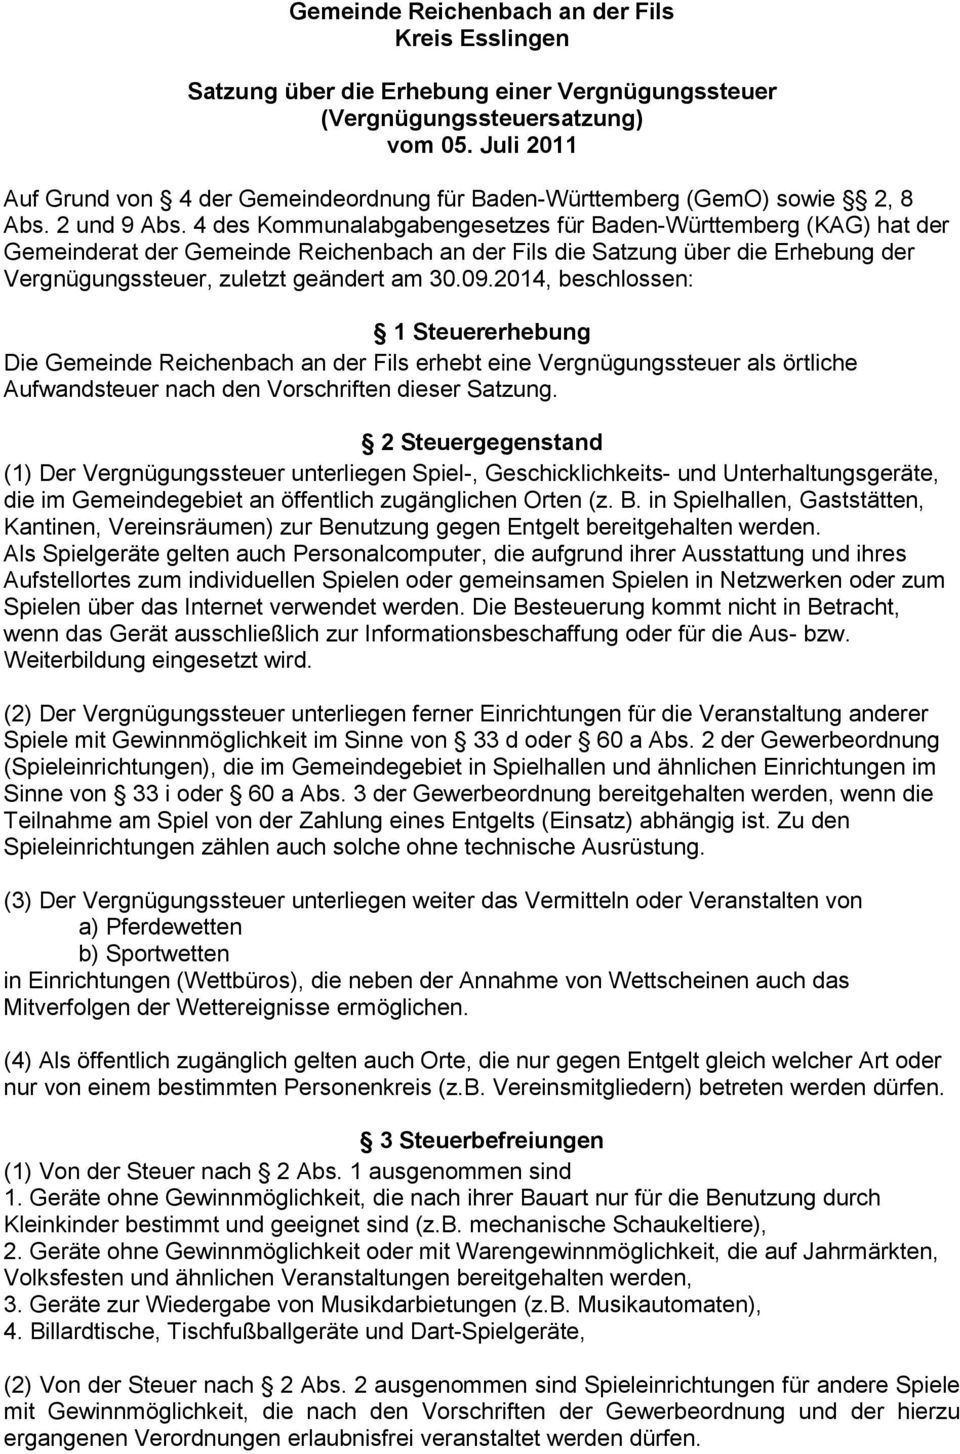 4 des Kommunalabgabengesetzes für Baden-Württemberg (KAG) hat der Gemeinderat der Gemeinde Reichenbach an der Fils die Satzung über die Erhebung der Vergnügungssteuer, zuletzt geändert am 30.09.